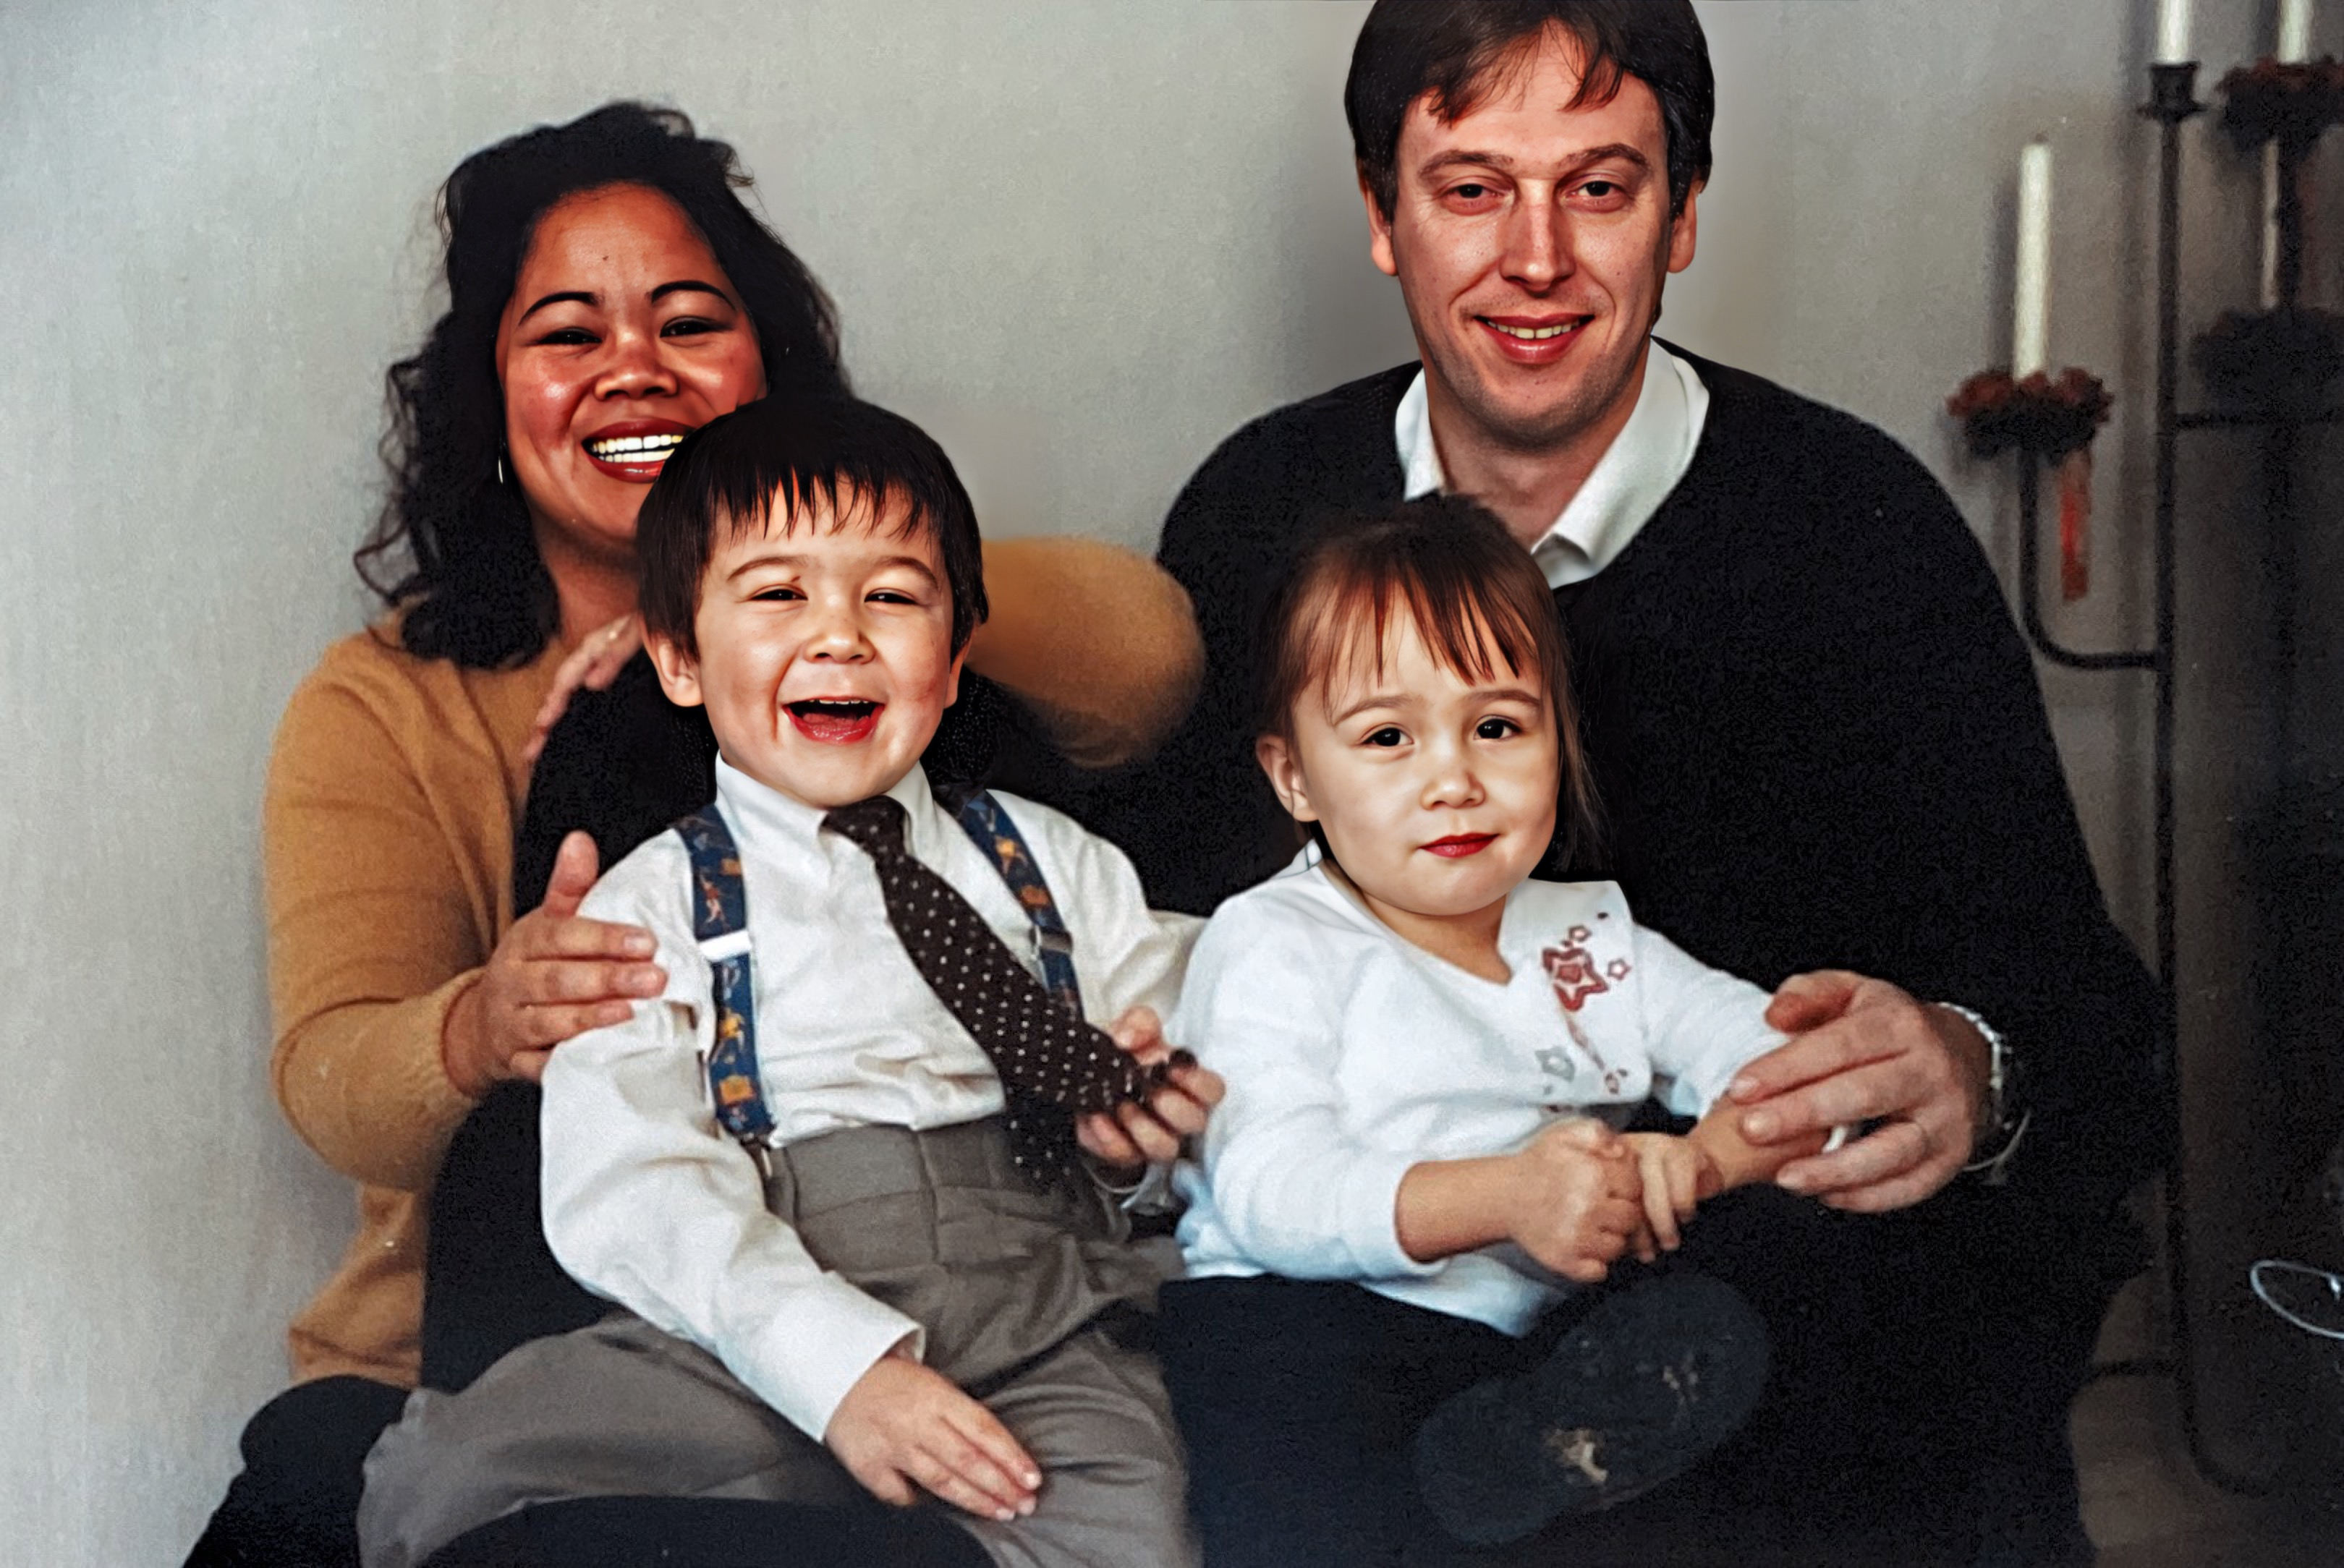 Family photo session April 2004